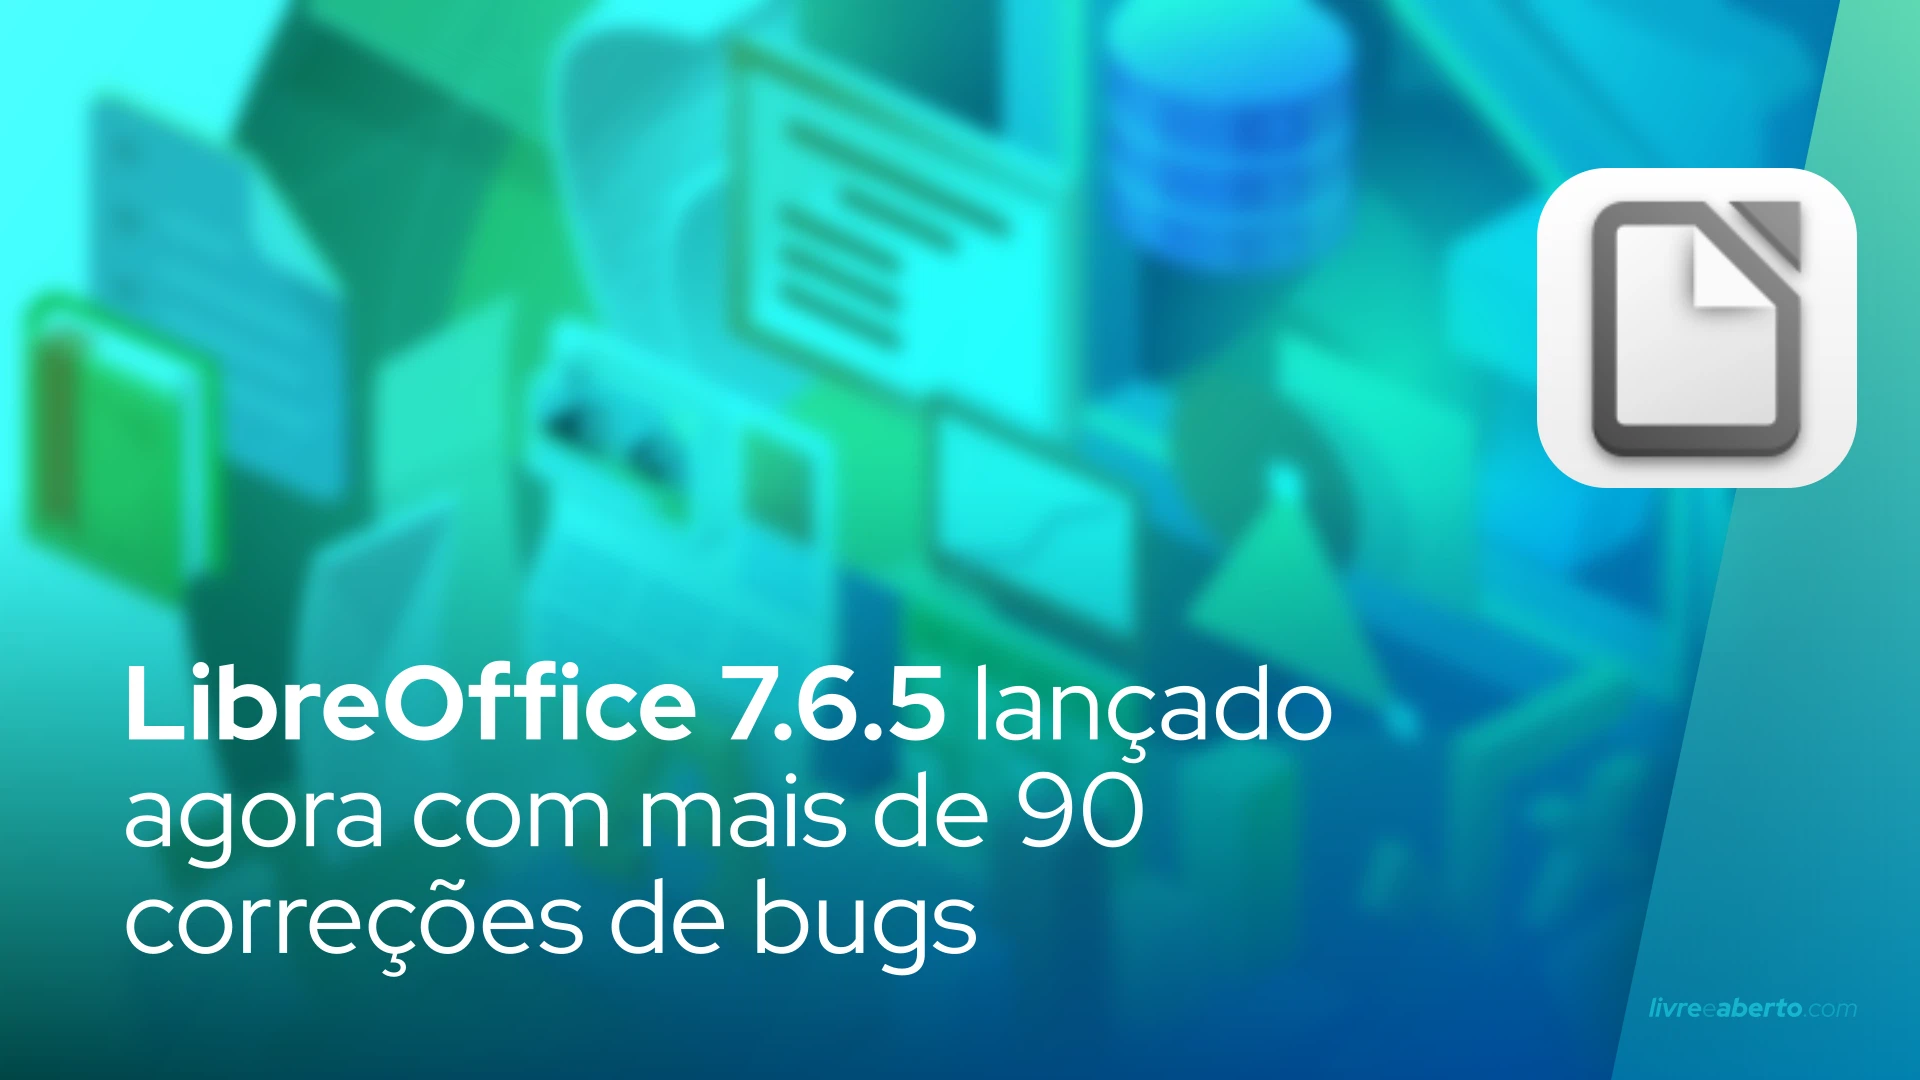 LibreOffice 7.6.5 lançado agora com mais de 90 correções de bugs